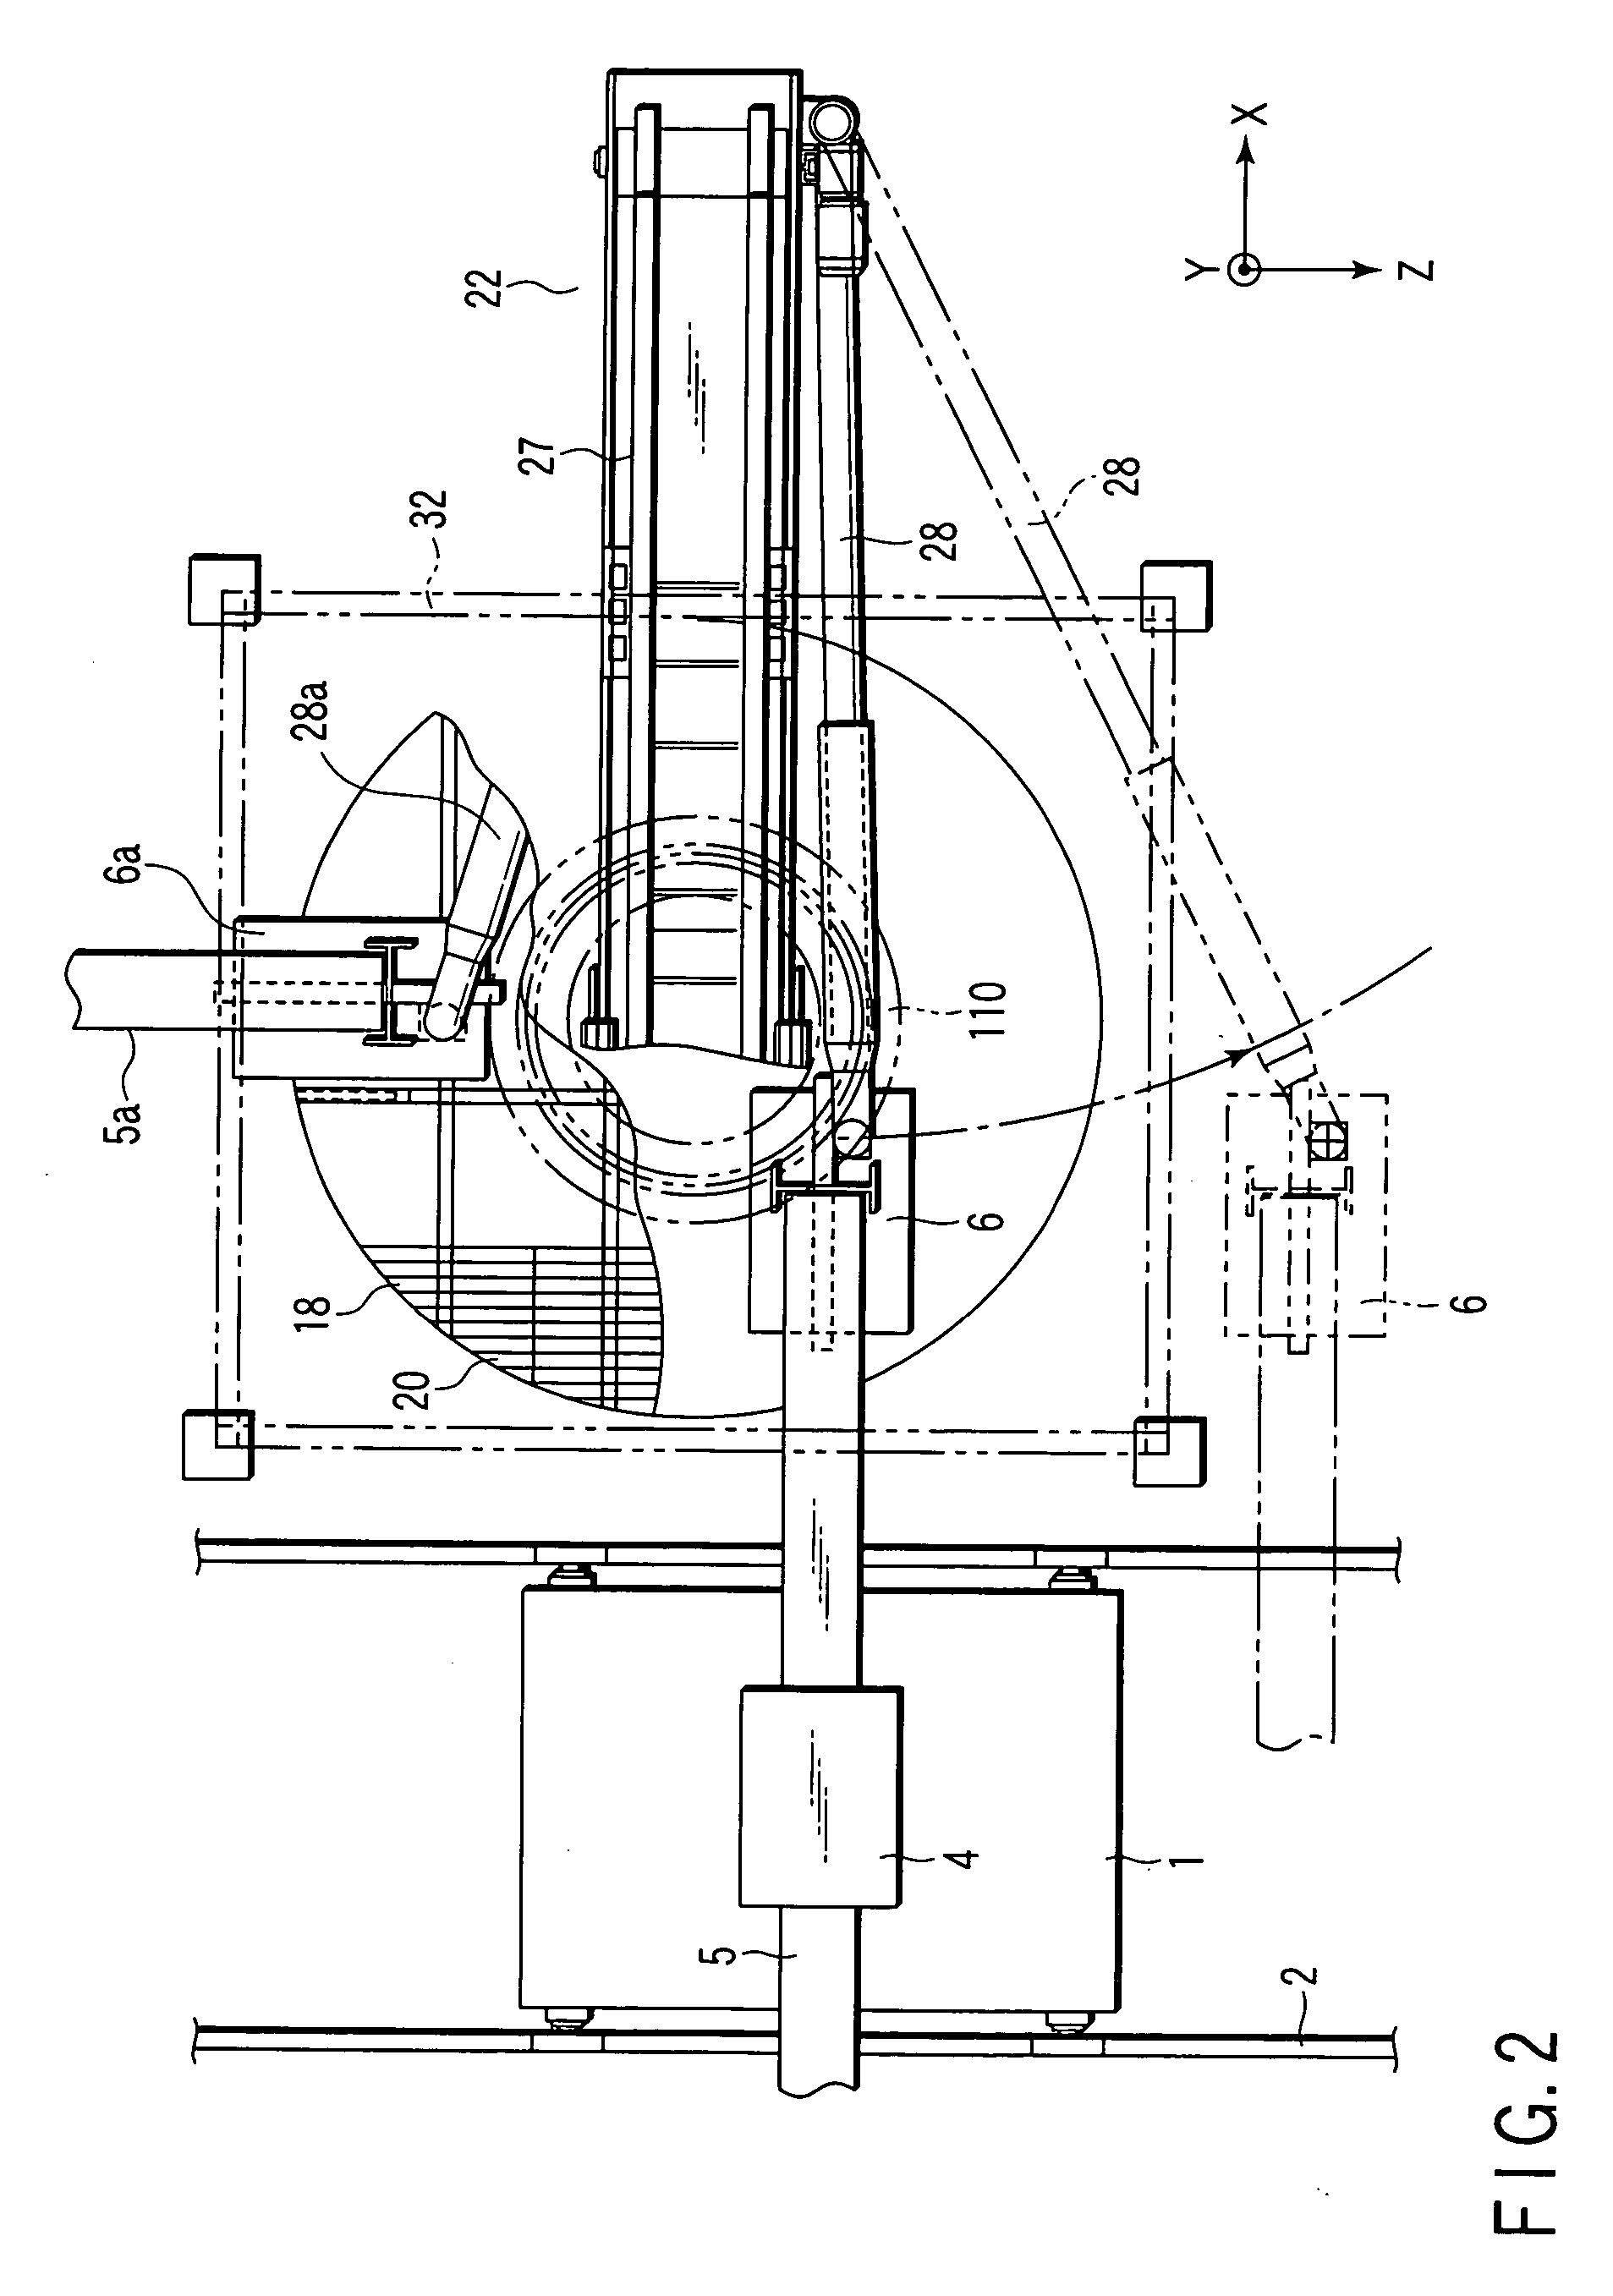 Large part polishing apparatus and polishing method